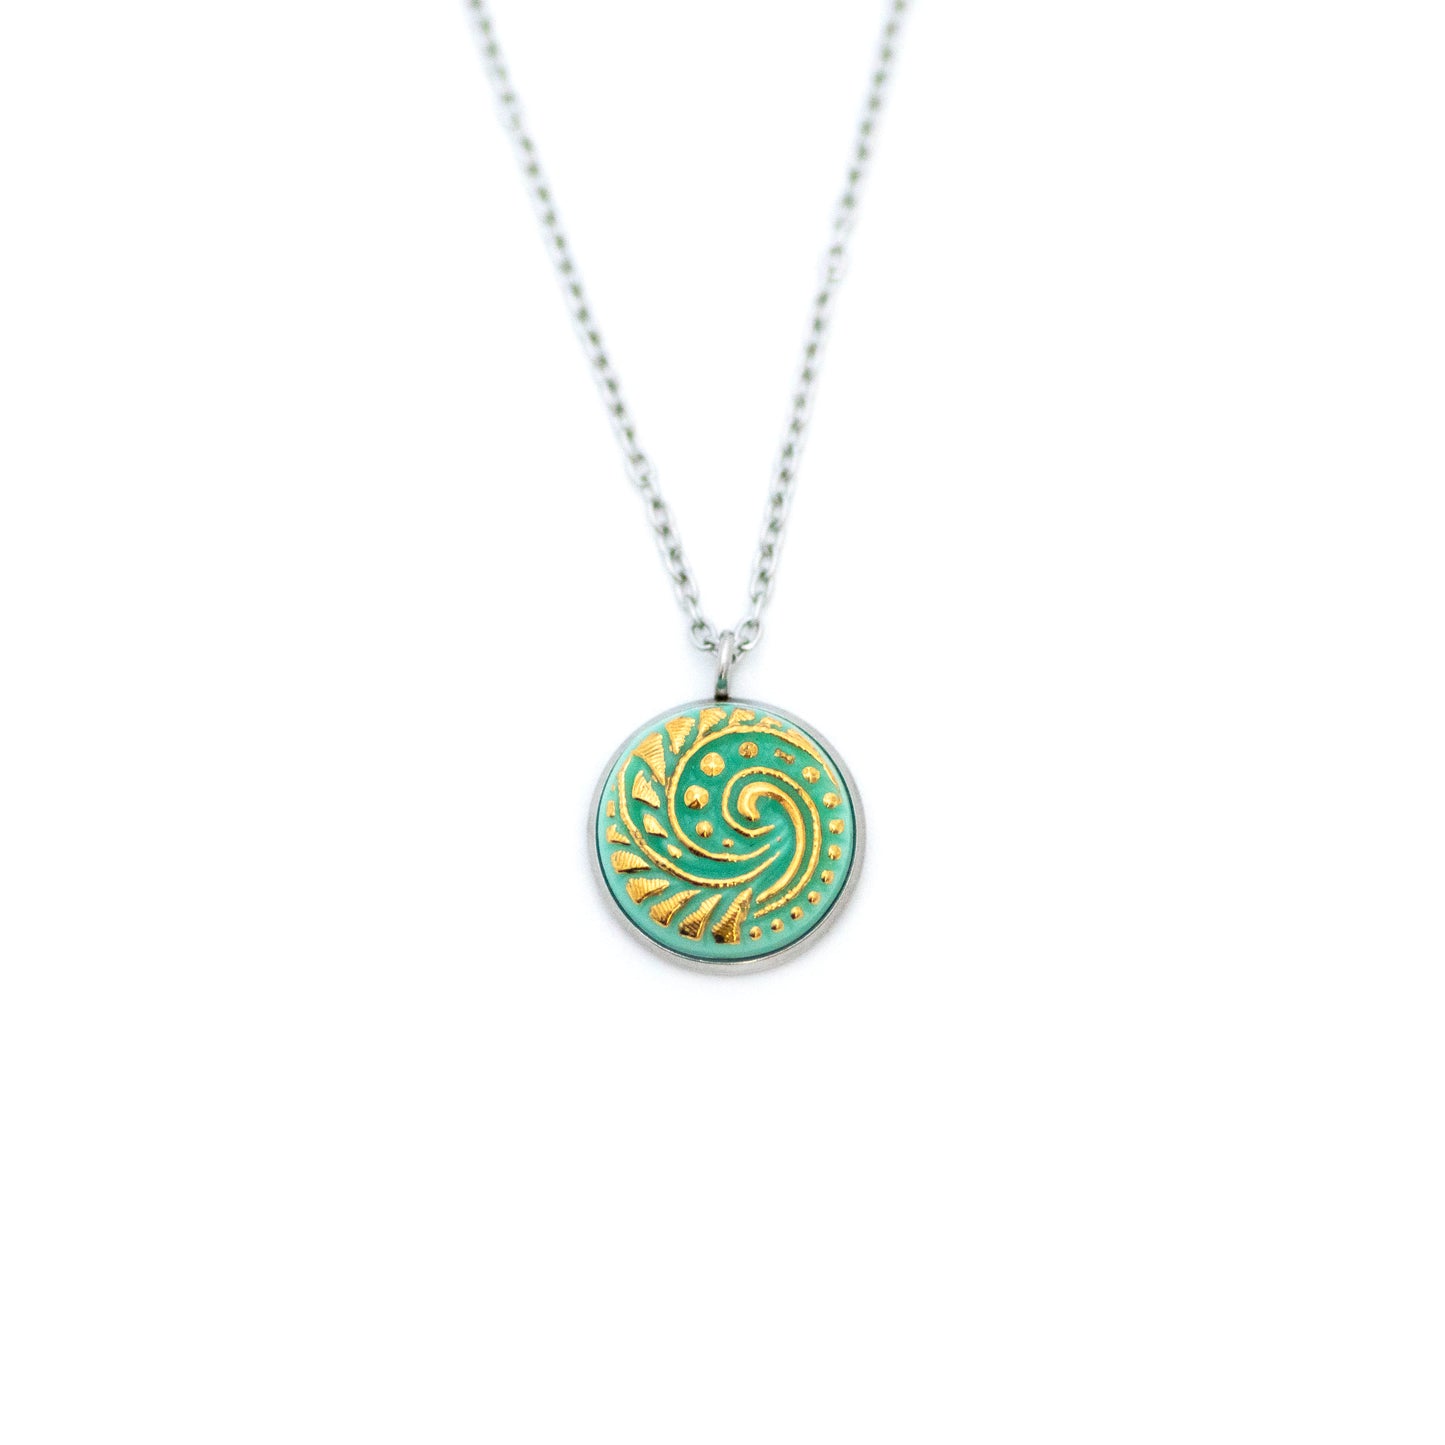 Czech Glass Button Necklace - Light Turquoise Ocean Swirl Uranium Glass